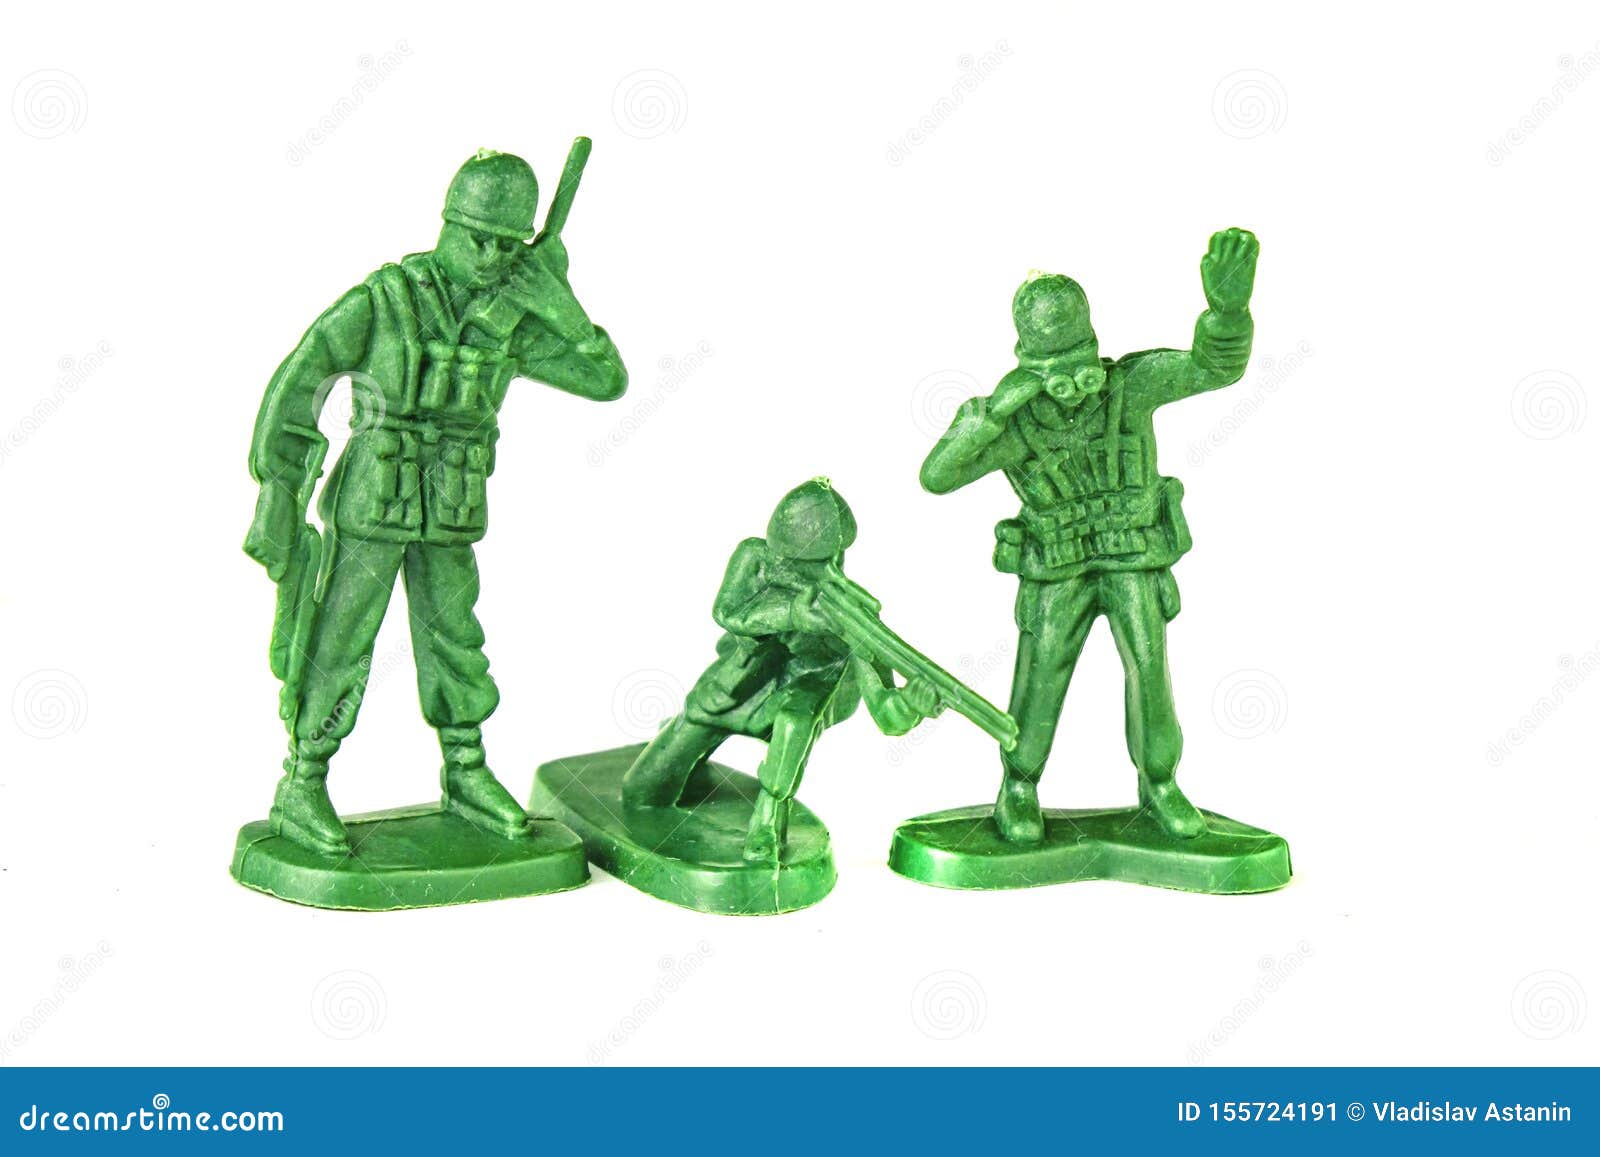 https://thumbs.dreamstime.com/z/soldados-verdes-de-pl%C3%A1stico-del-ej%C3%A9rcito-aislados-fondo-blanco-verde-en-juguetes-militares-guerra-armados-juegos-armas-combate-155724191.jpg